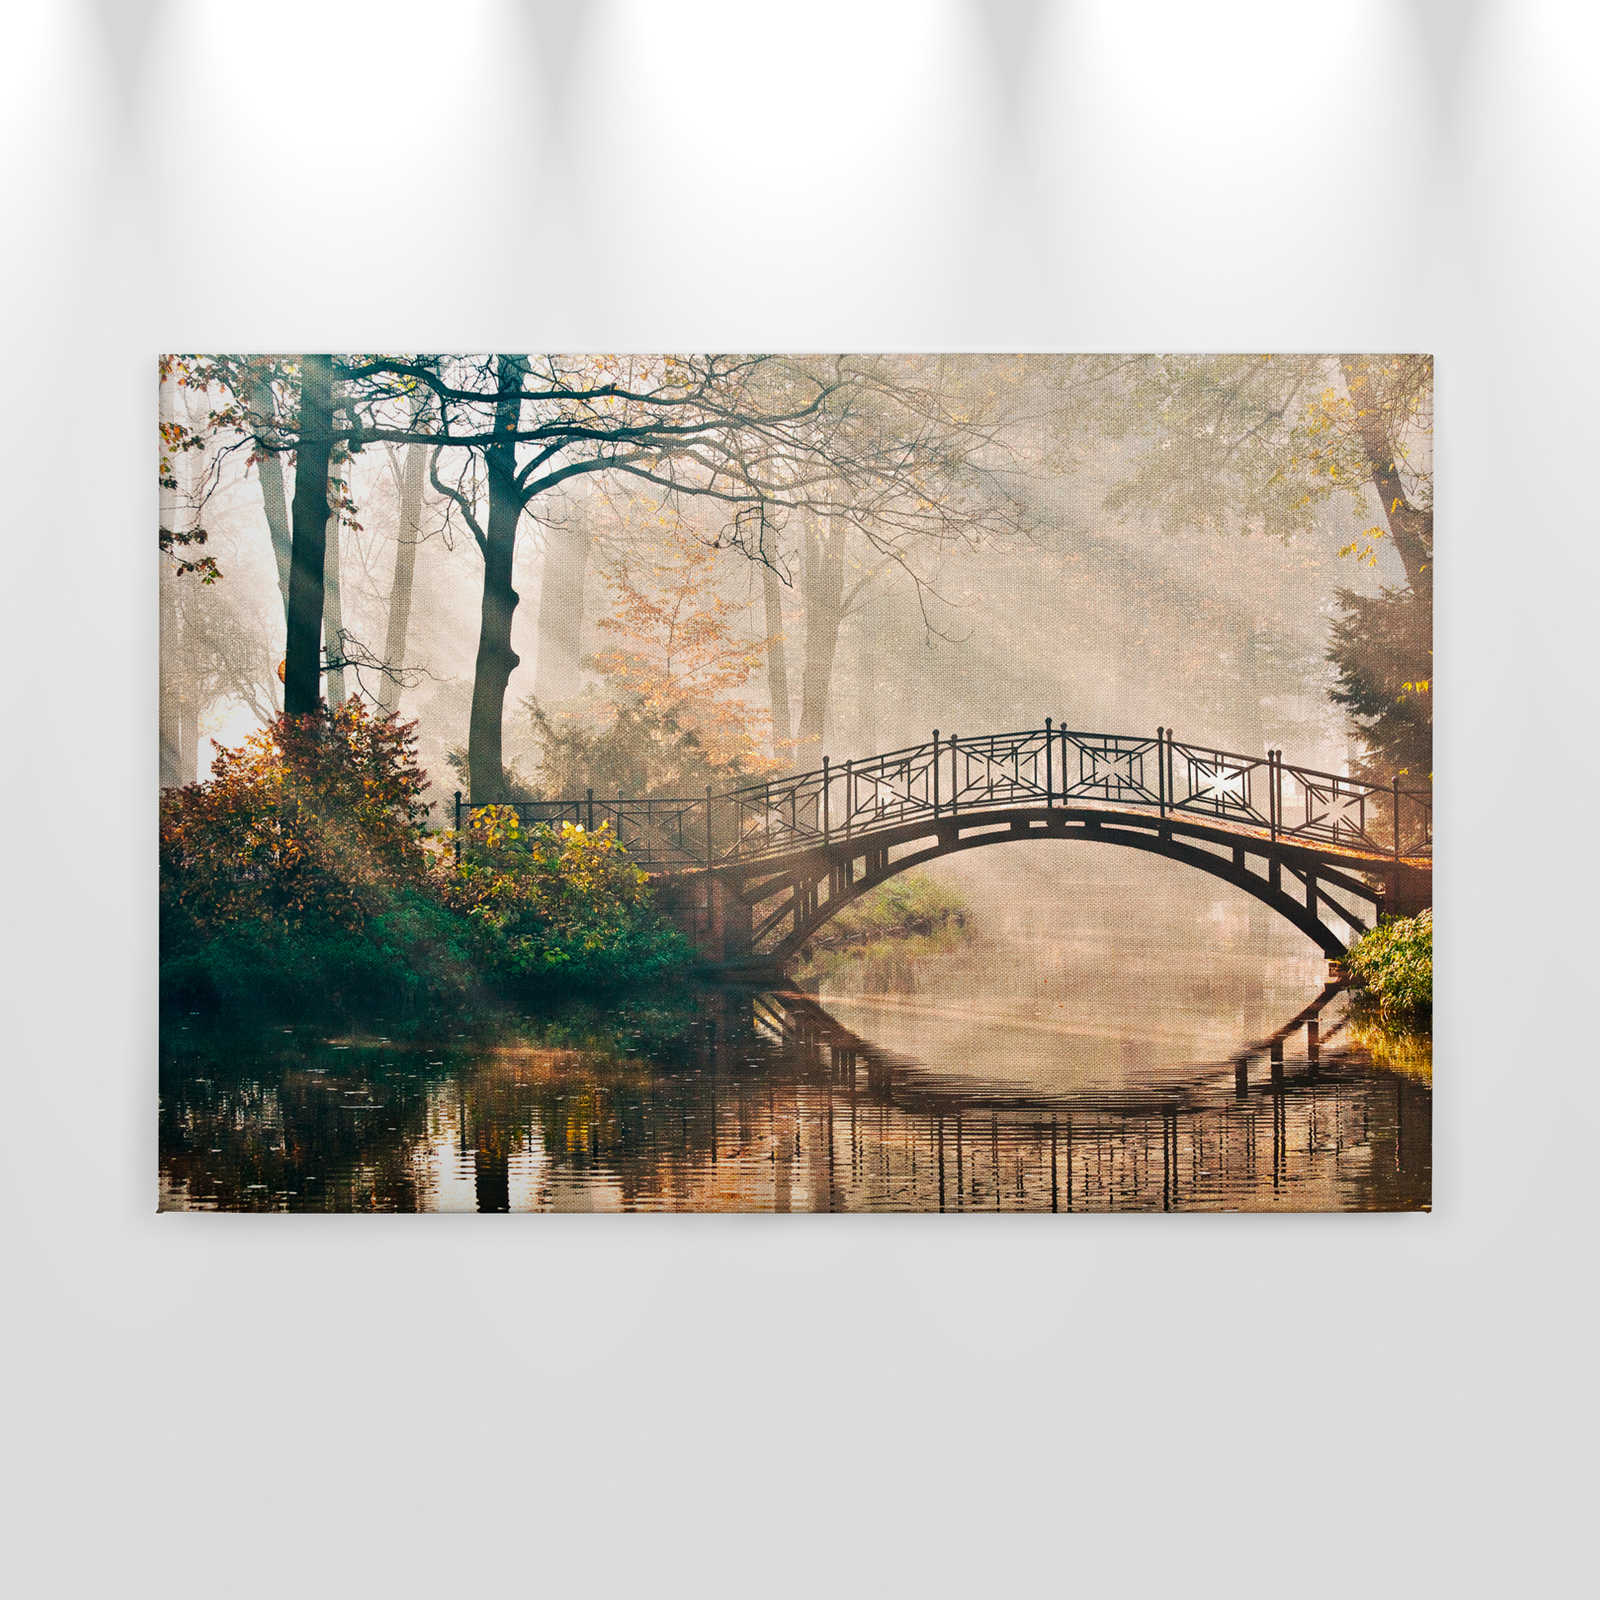             Canvas met brug over een rivier in een loofbos - 0.90 m x 0.60 m
        